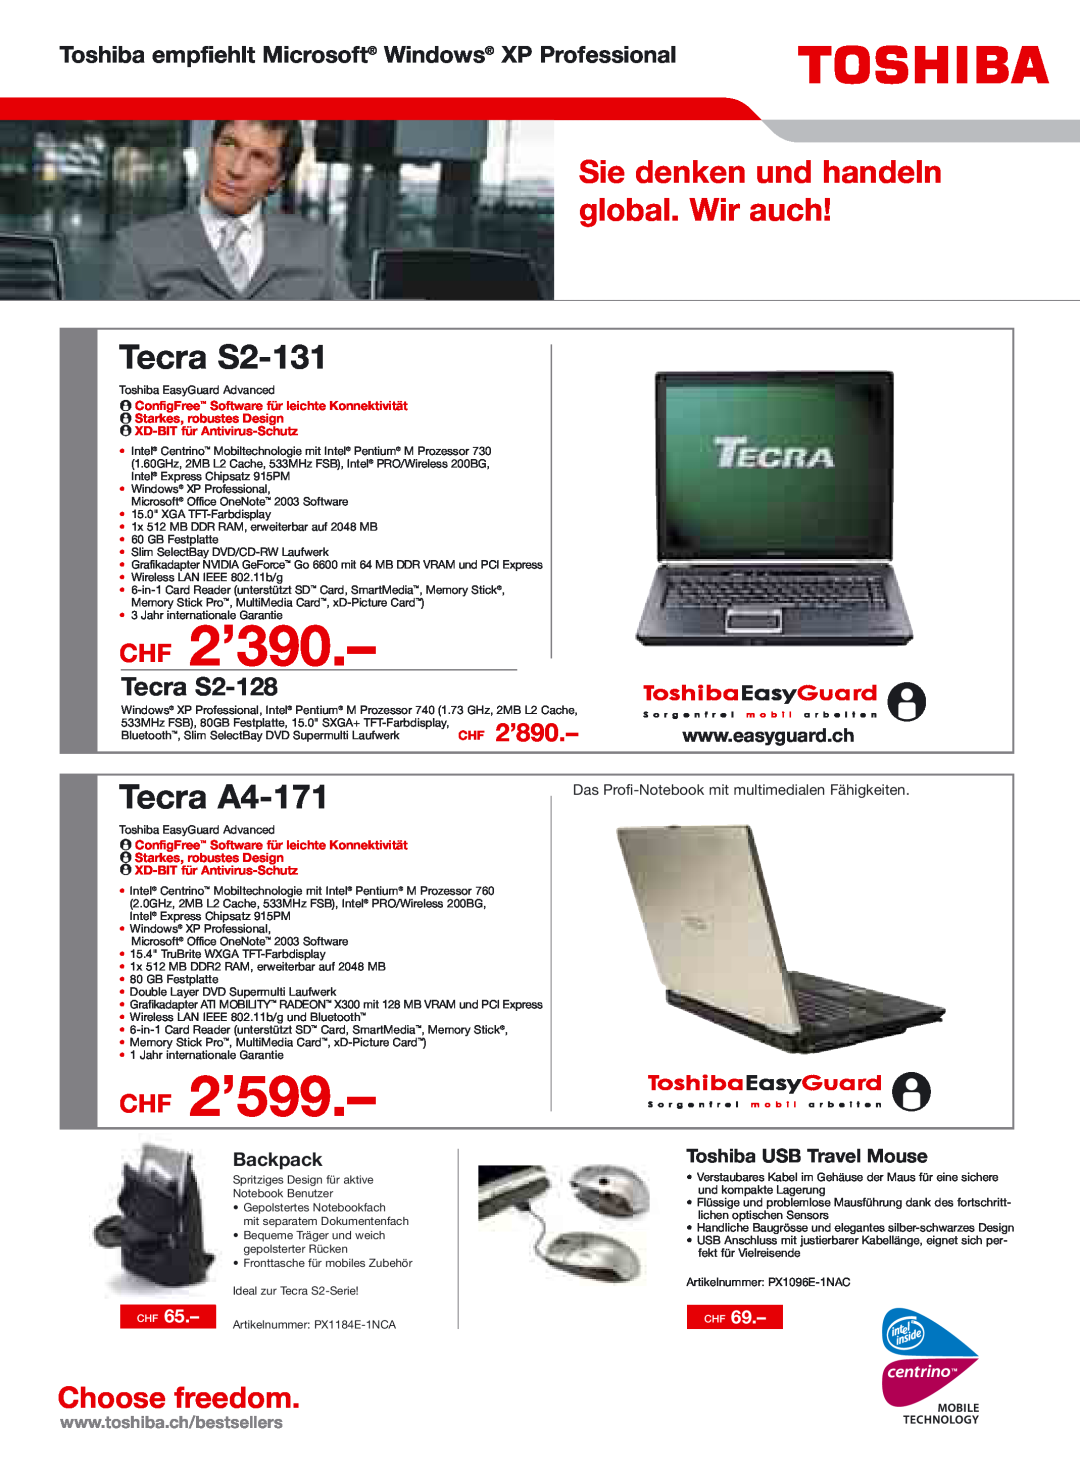 Toshiba Portg R200 CHF 2’390, CHF 2’599, Tecra S2-131, Tecra A4-171, Sie denken und handeln global. Wir auch, Tecra S2-128 